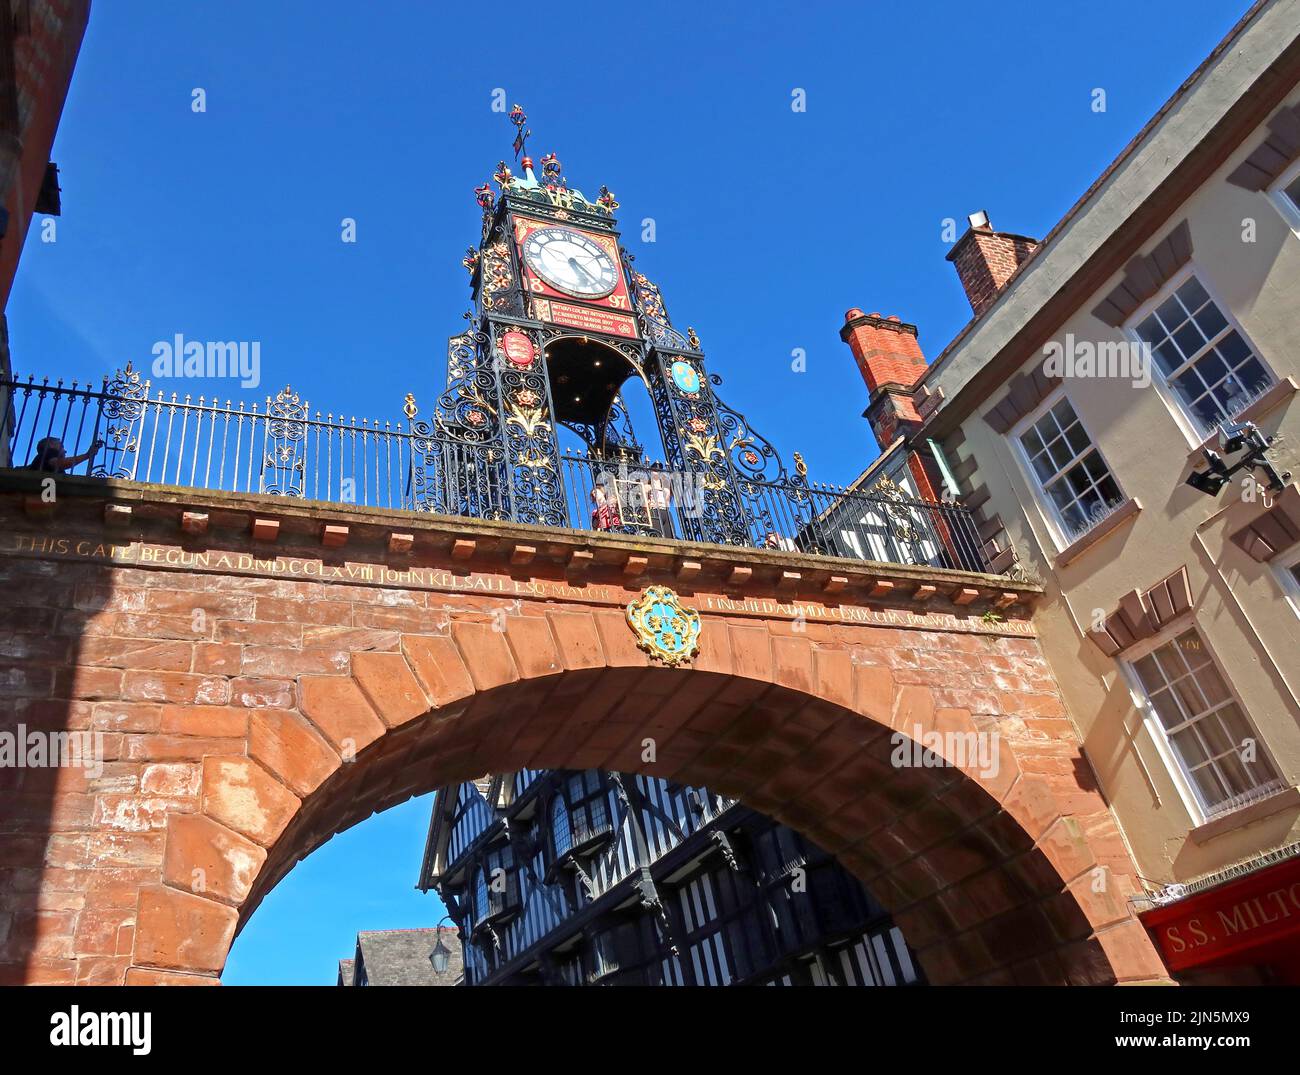 Un jour d'été chargé, Eastgate montrant l'horloge victorienne 1897 Turret et les murs de la ville pont de l'arche géorgienne, Chester, Cheshire, Angleterre, Royaume-Uni, CH1 1LE Banque D'Images